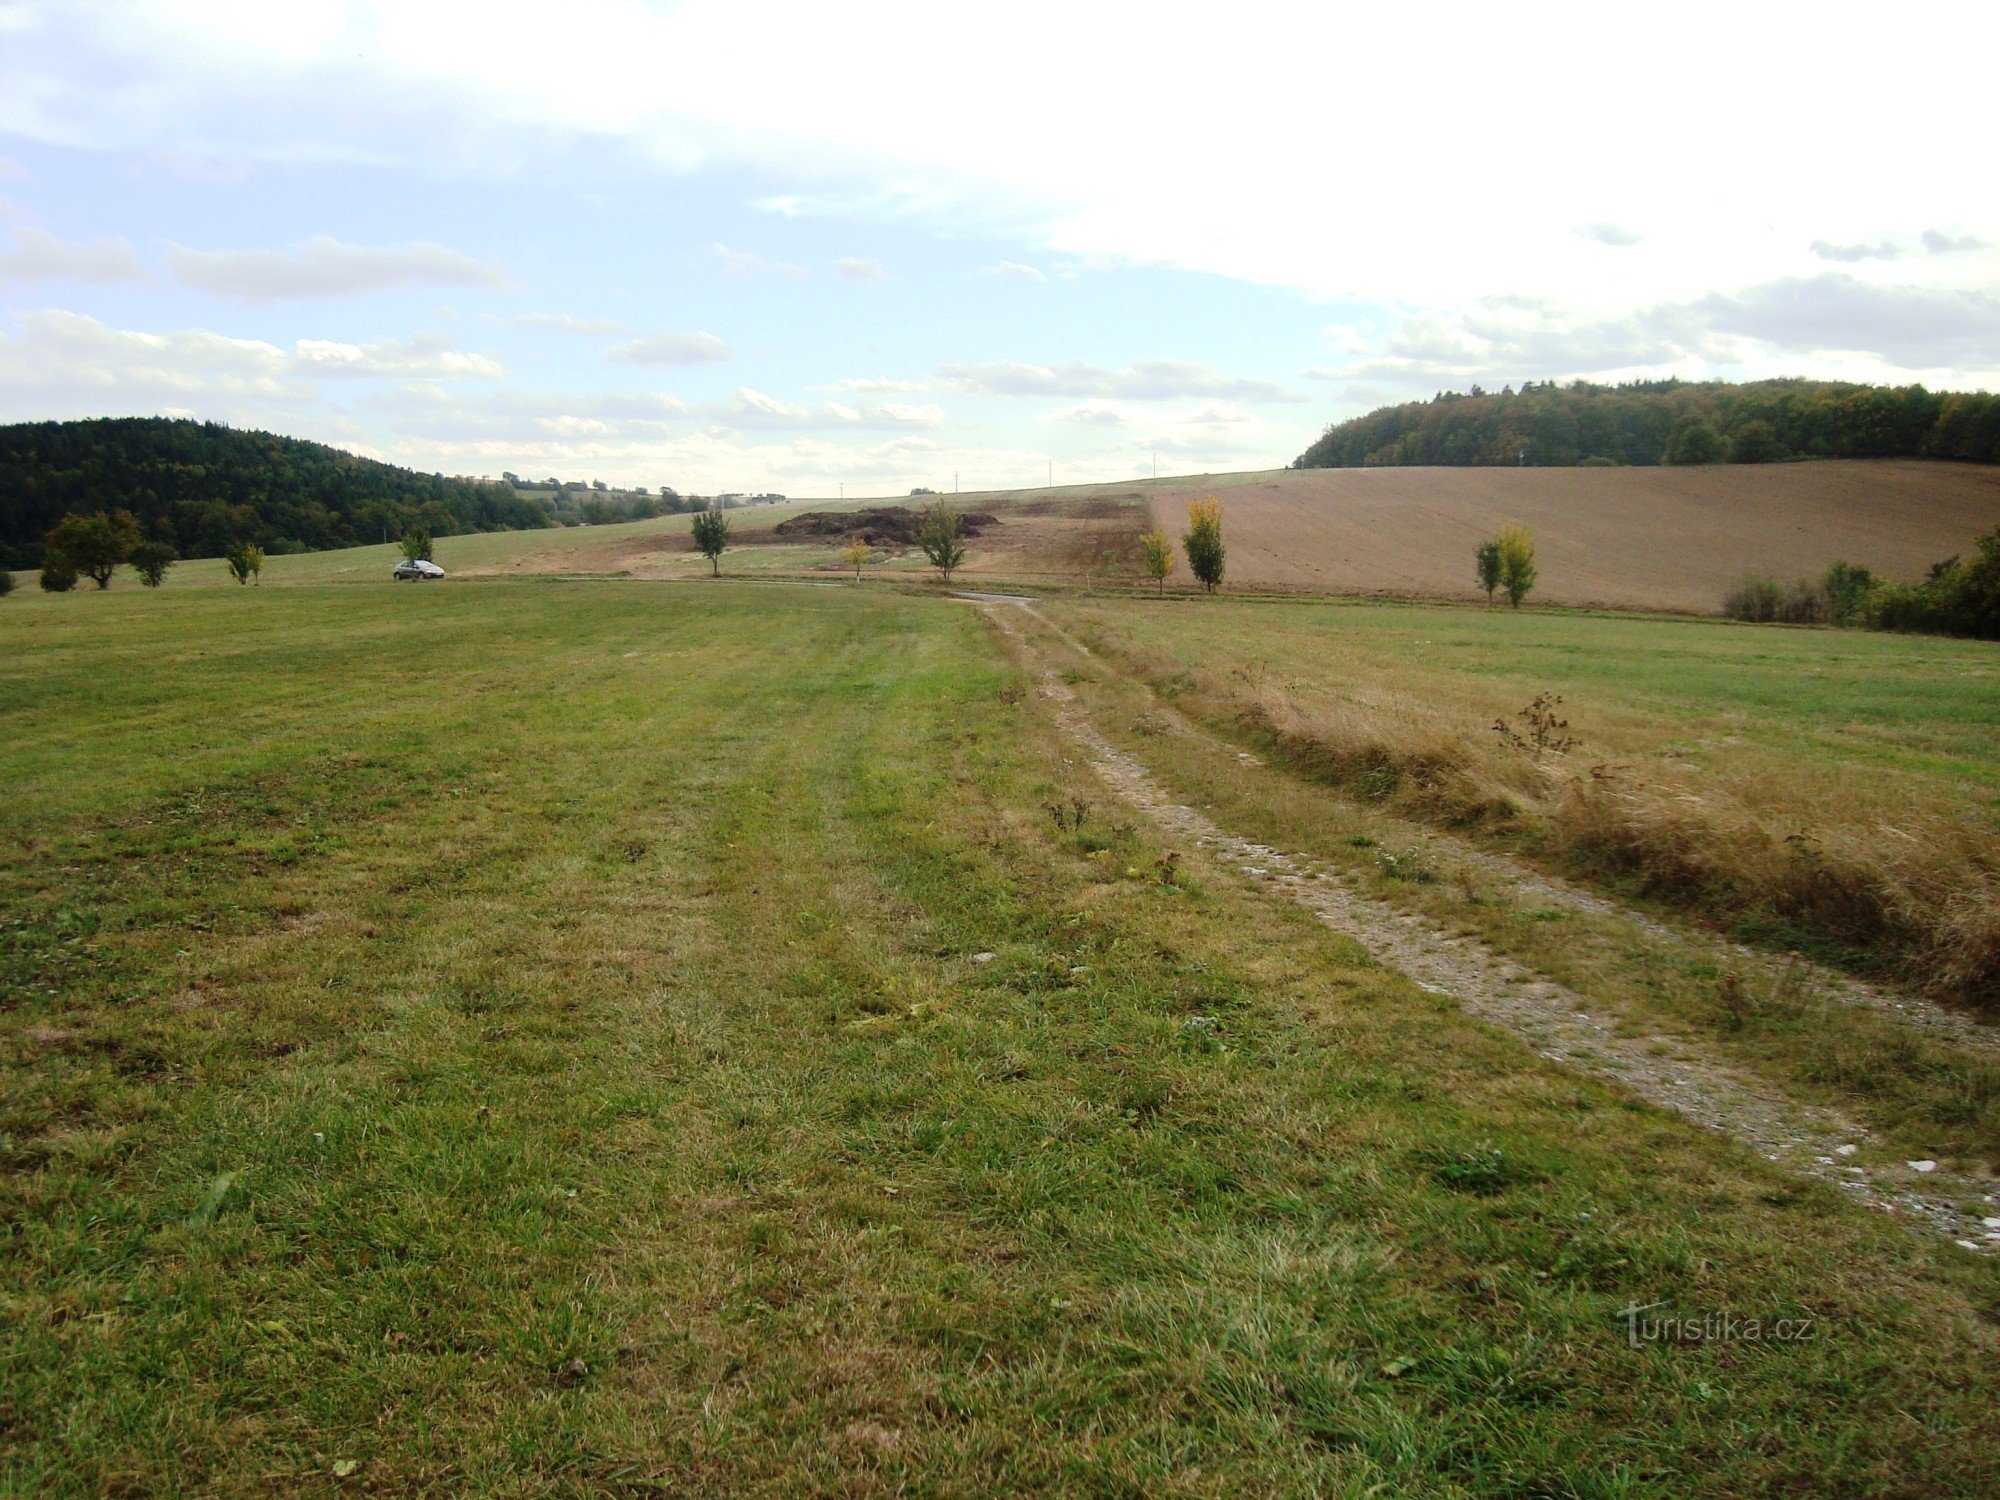 Riserva naturale Prűchodnice-paesaggio vicino alla strada di accesso alla riserva dalla strada-F